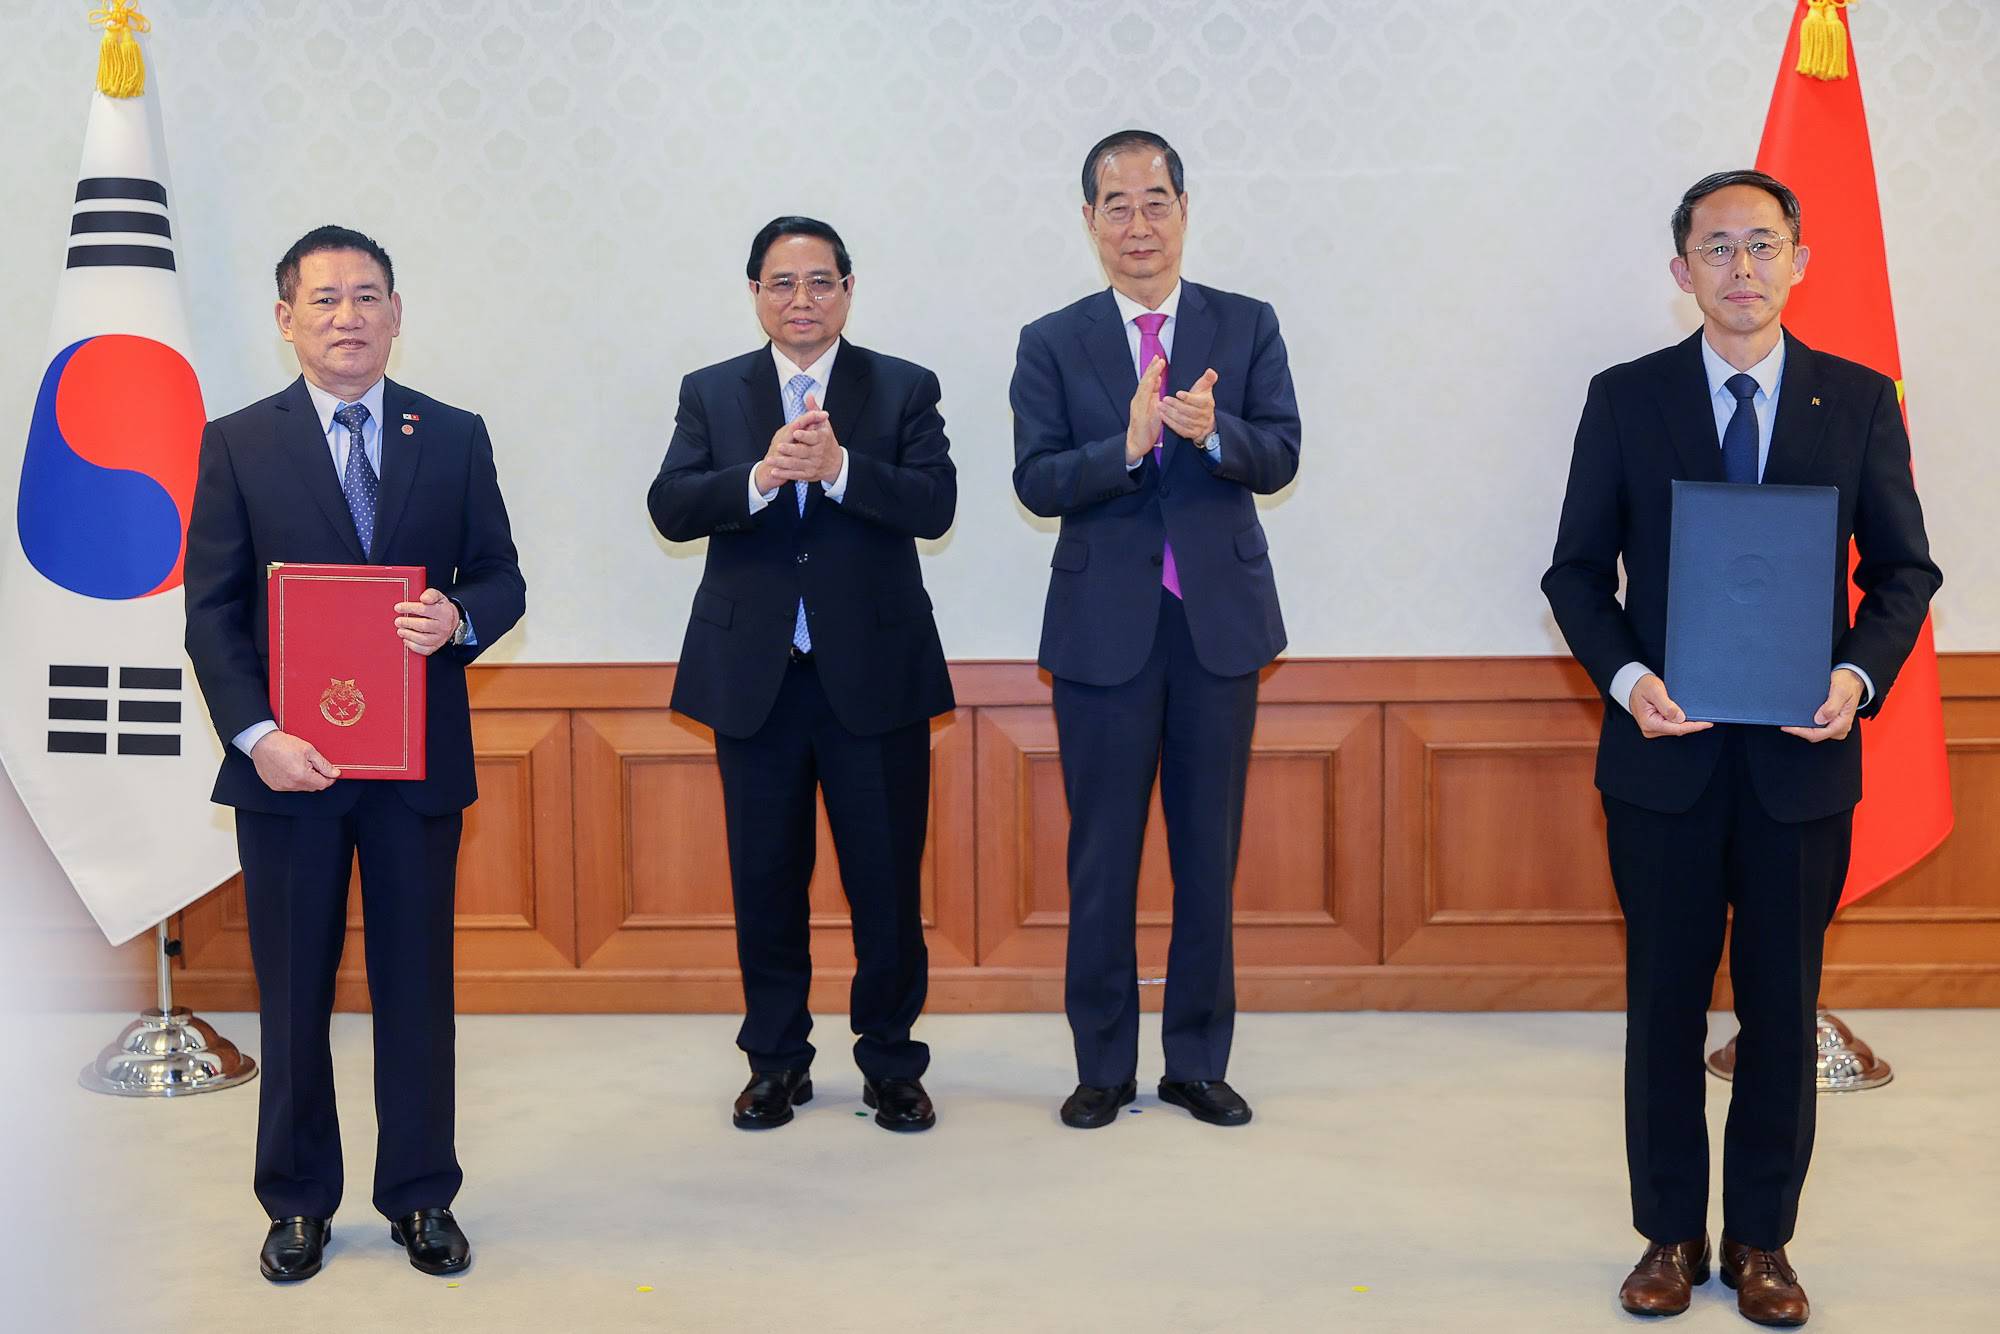 Thủ tướng Phạm Minh Chính và Thủ tướng Hàn Quốc Han Duck Soo chứng kiến trao Thỏa thuận vay đầu tư xây dựng công trình đường cao tốc Mỹ An - Cao Lãnh giai đoạn 1 giữa Bộ Tài chính và Ngân hàng XNK Hàn Quốc - Ảnh: VGP/Nhật Bắc